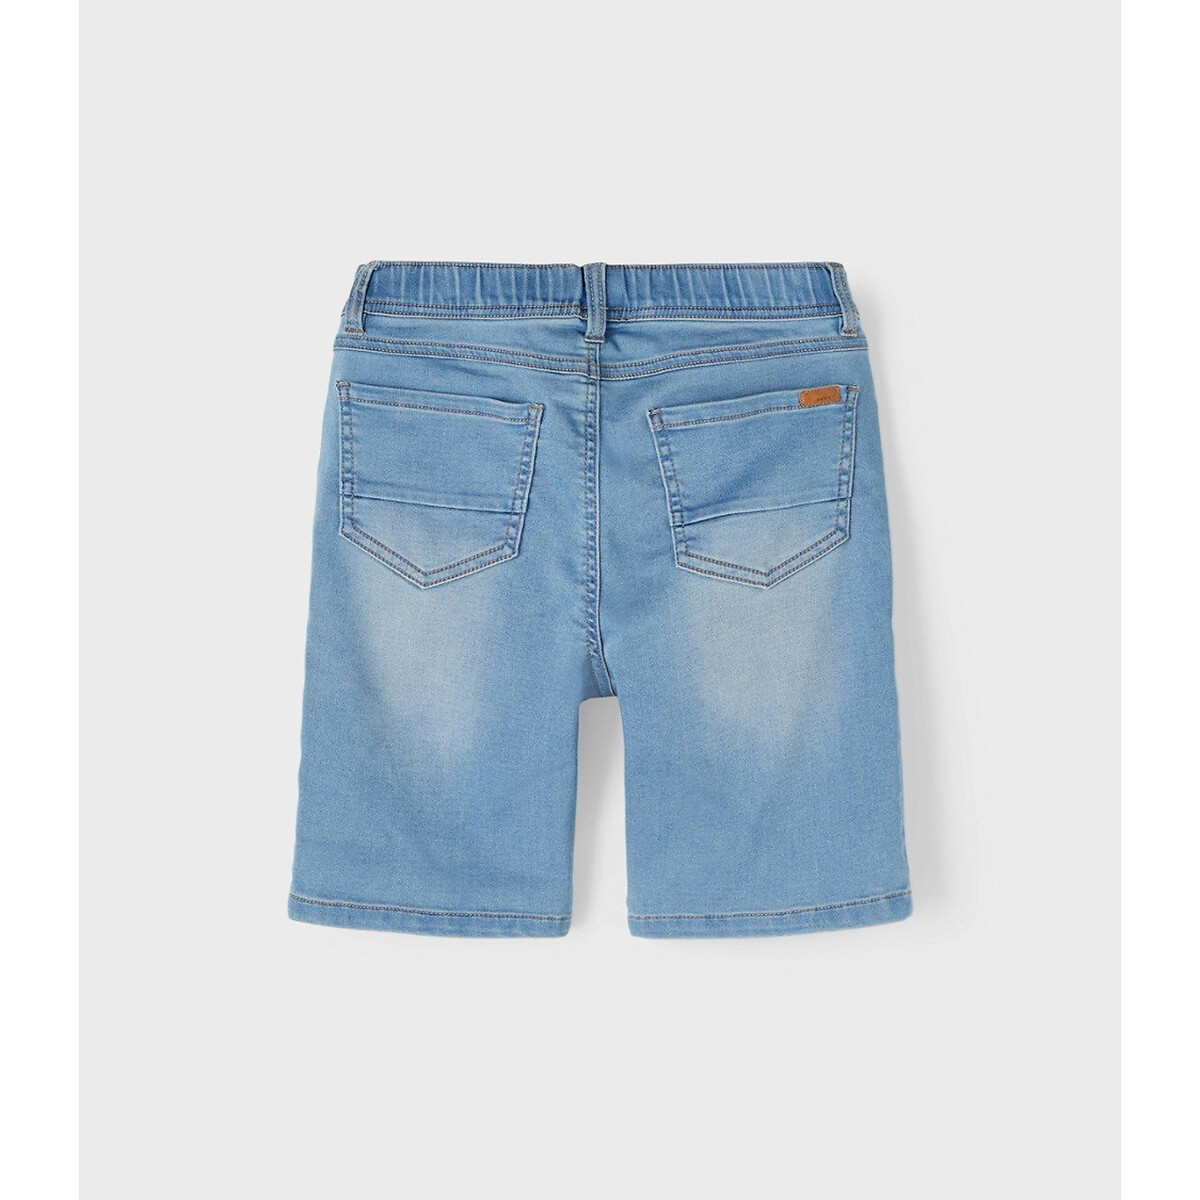 Шорты из джинсовой ткани в стиле джоггеров  9 синий LaRedoute, размер 9 - фото 4